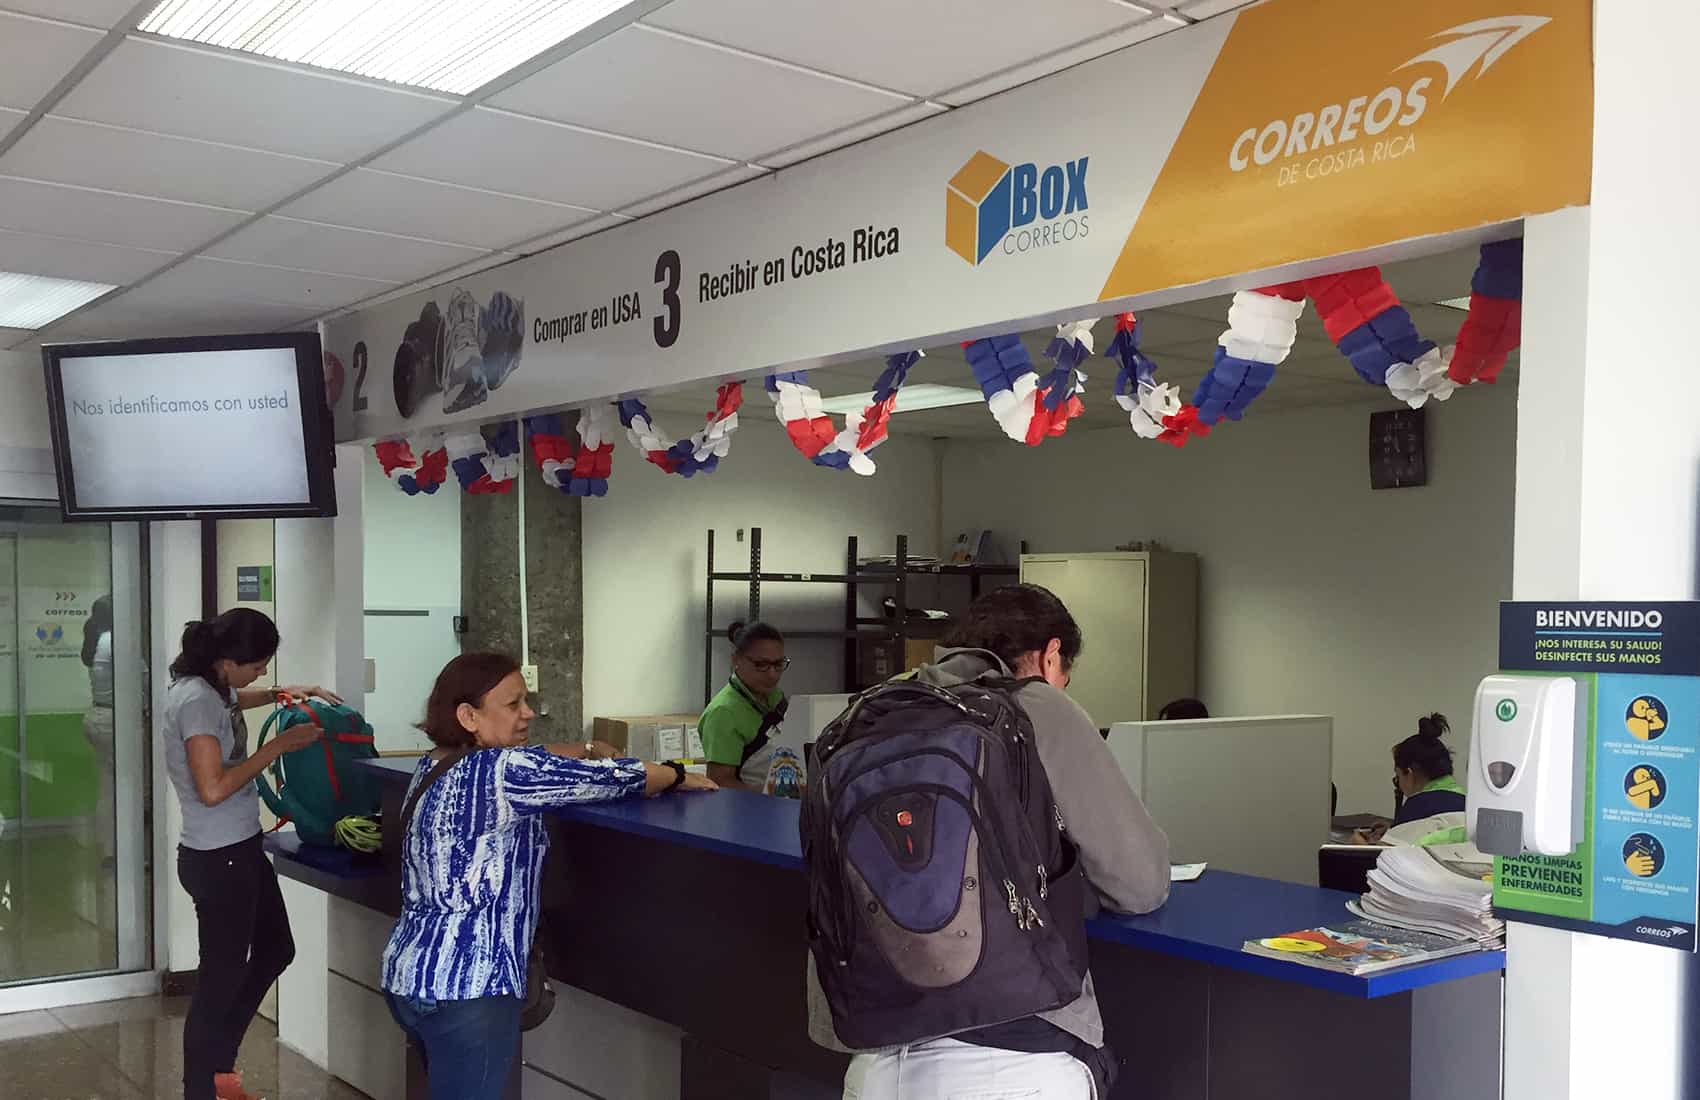 Residence applications at Correos de Costa Rica